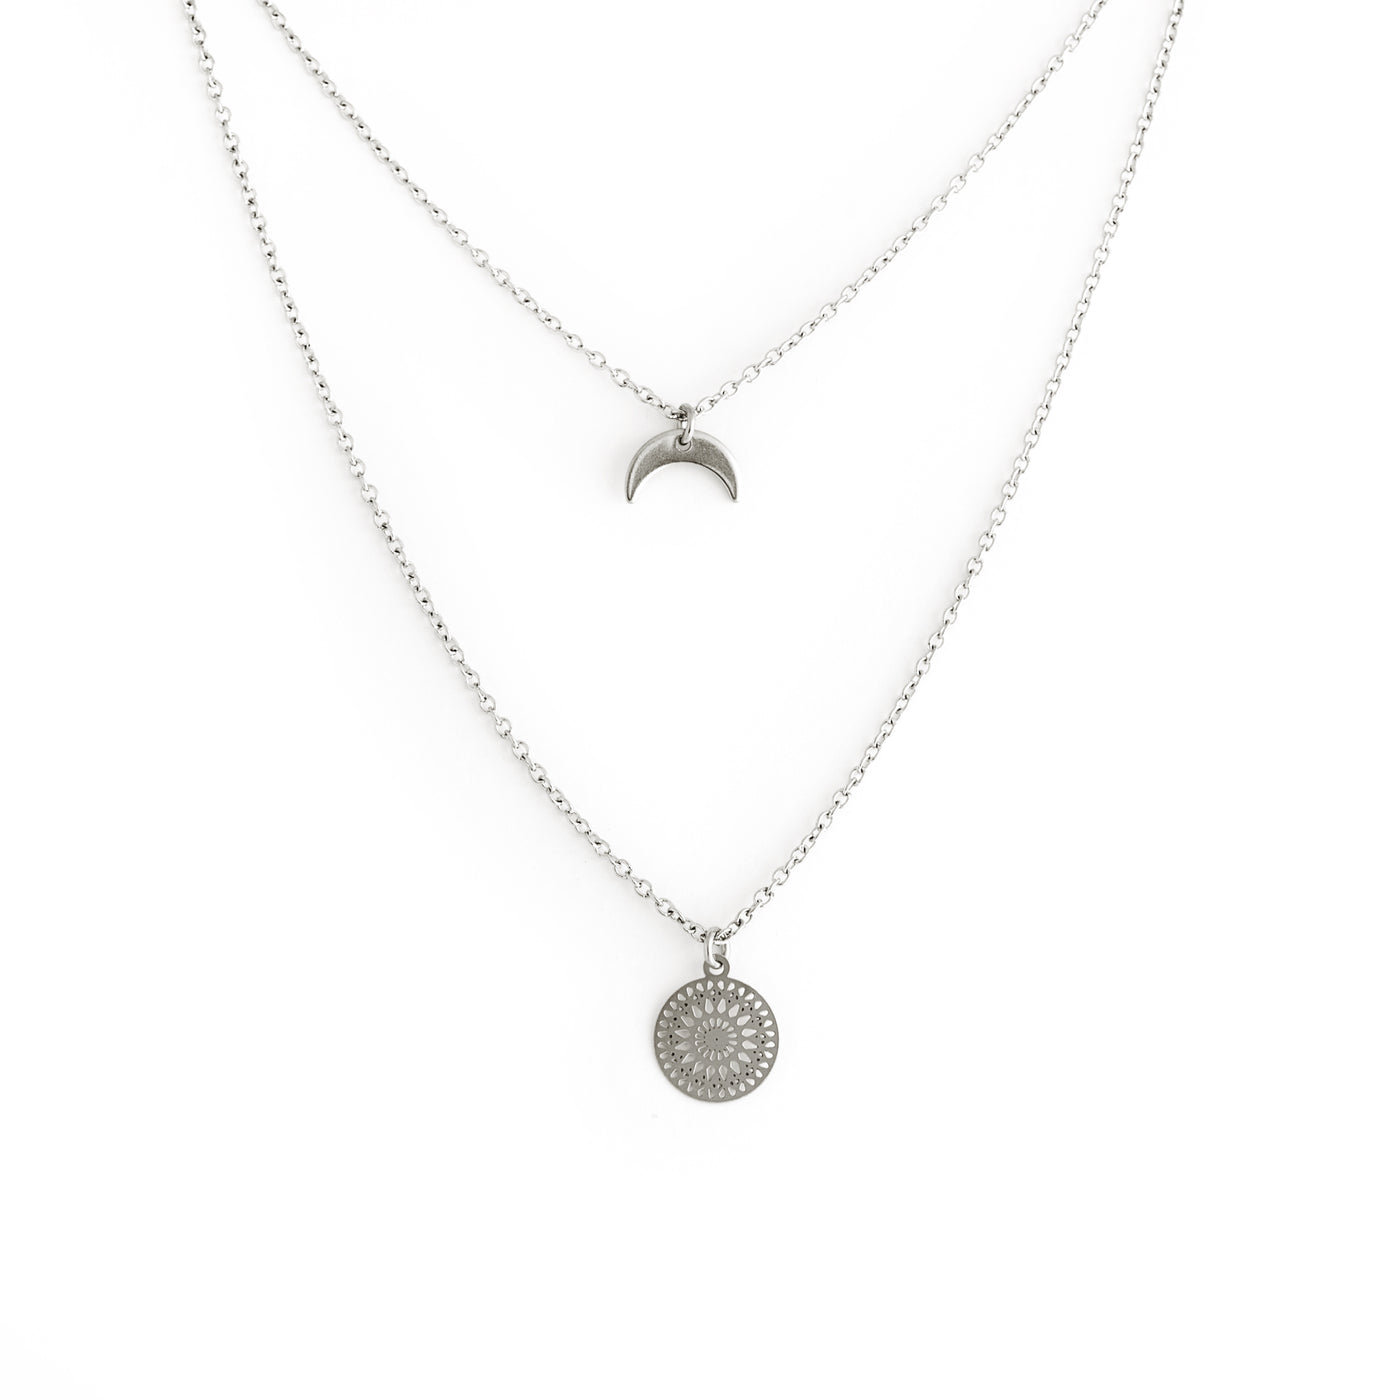 Mandala Necklace - Silver Mandala Necklace - Silver